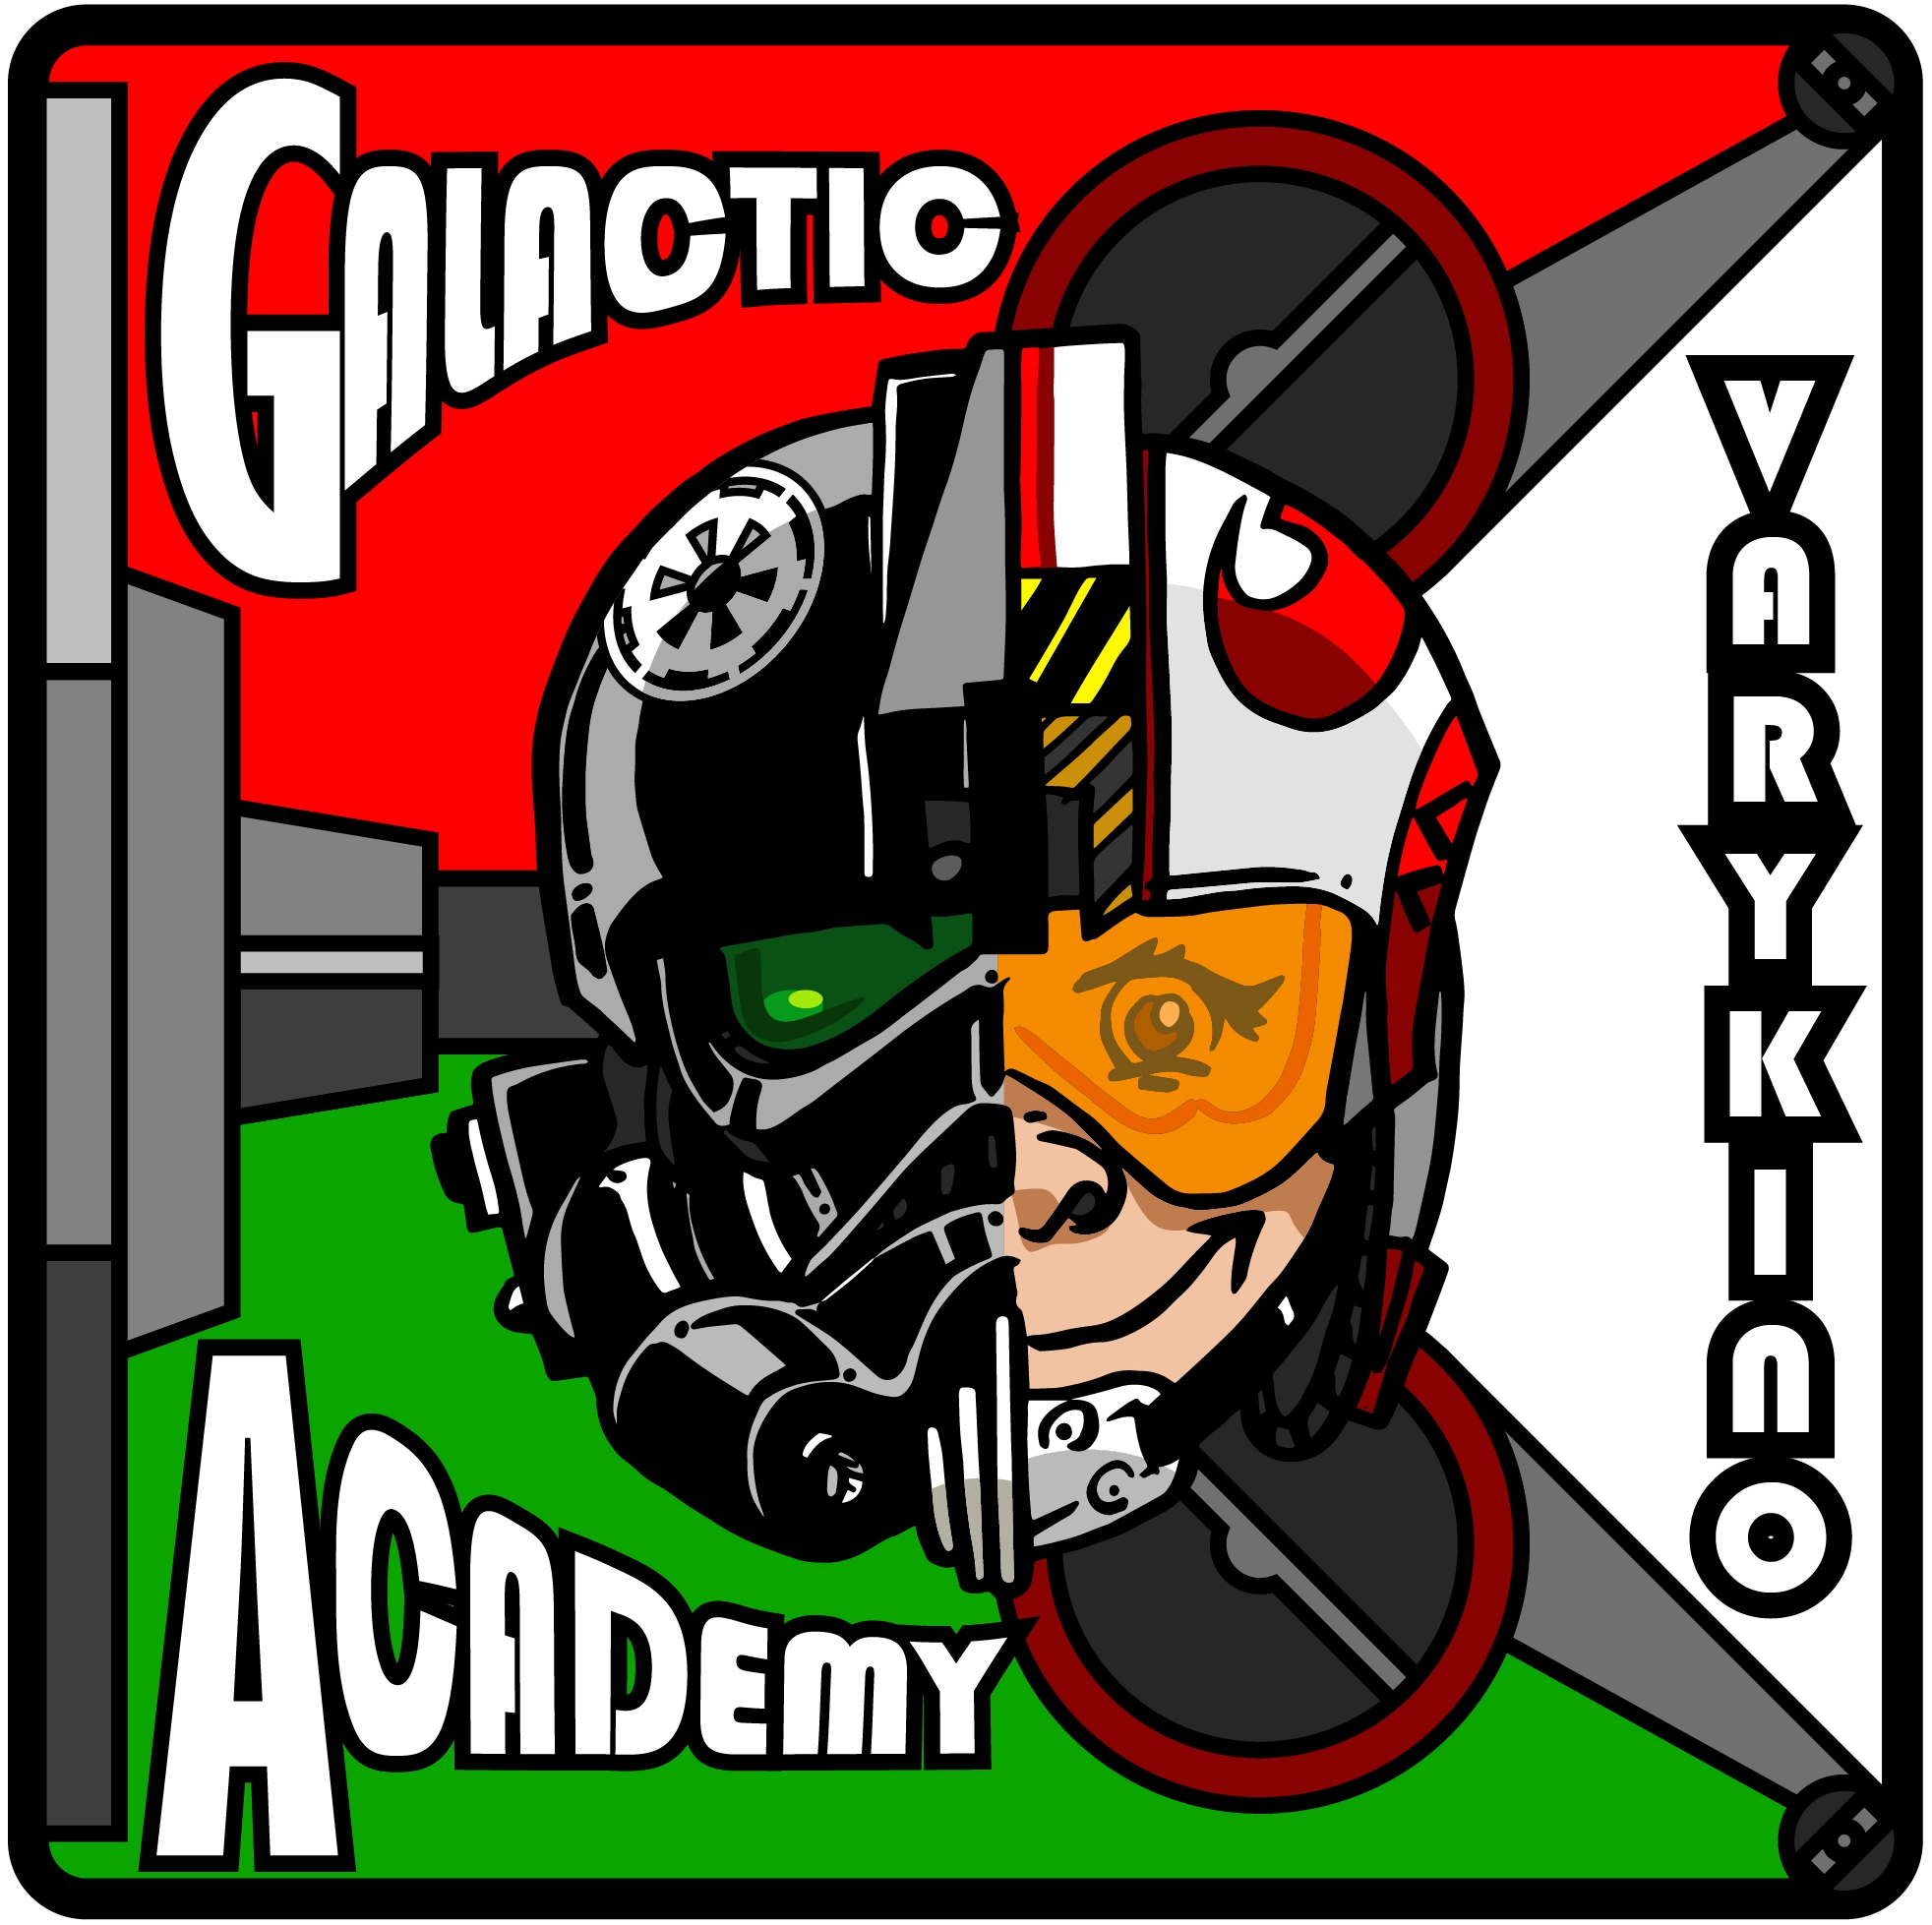 Galactic Academy